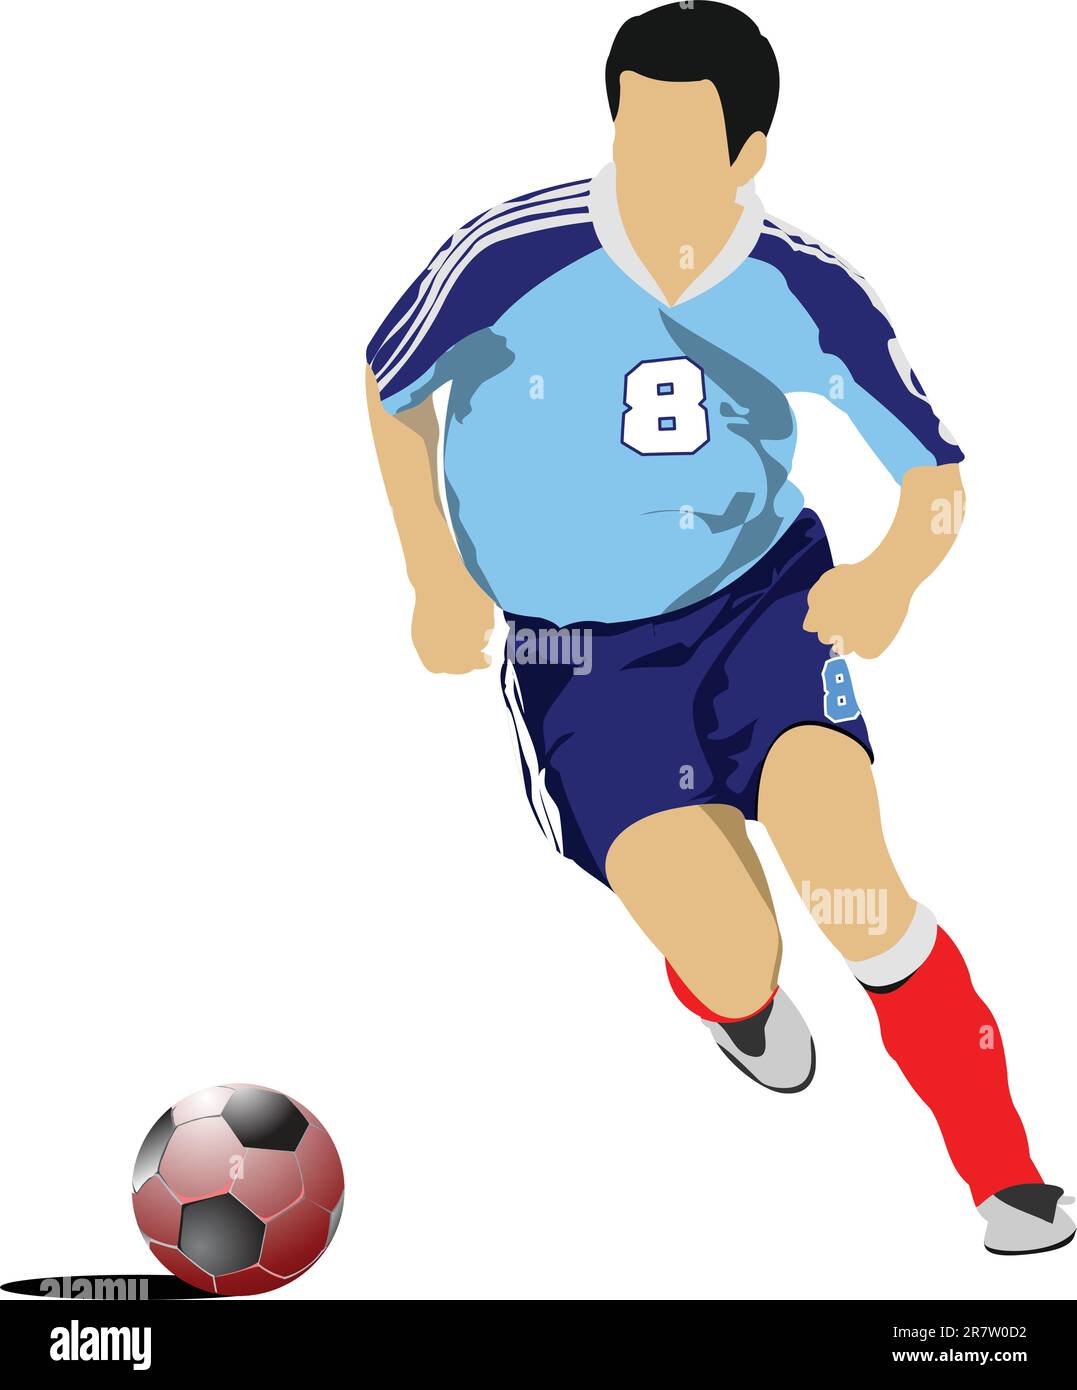 Soccer Player Stock Illustrations – 93,449 Soccer Player Stock  Illustrations, Vectors & Clipart - Dreamstime